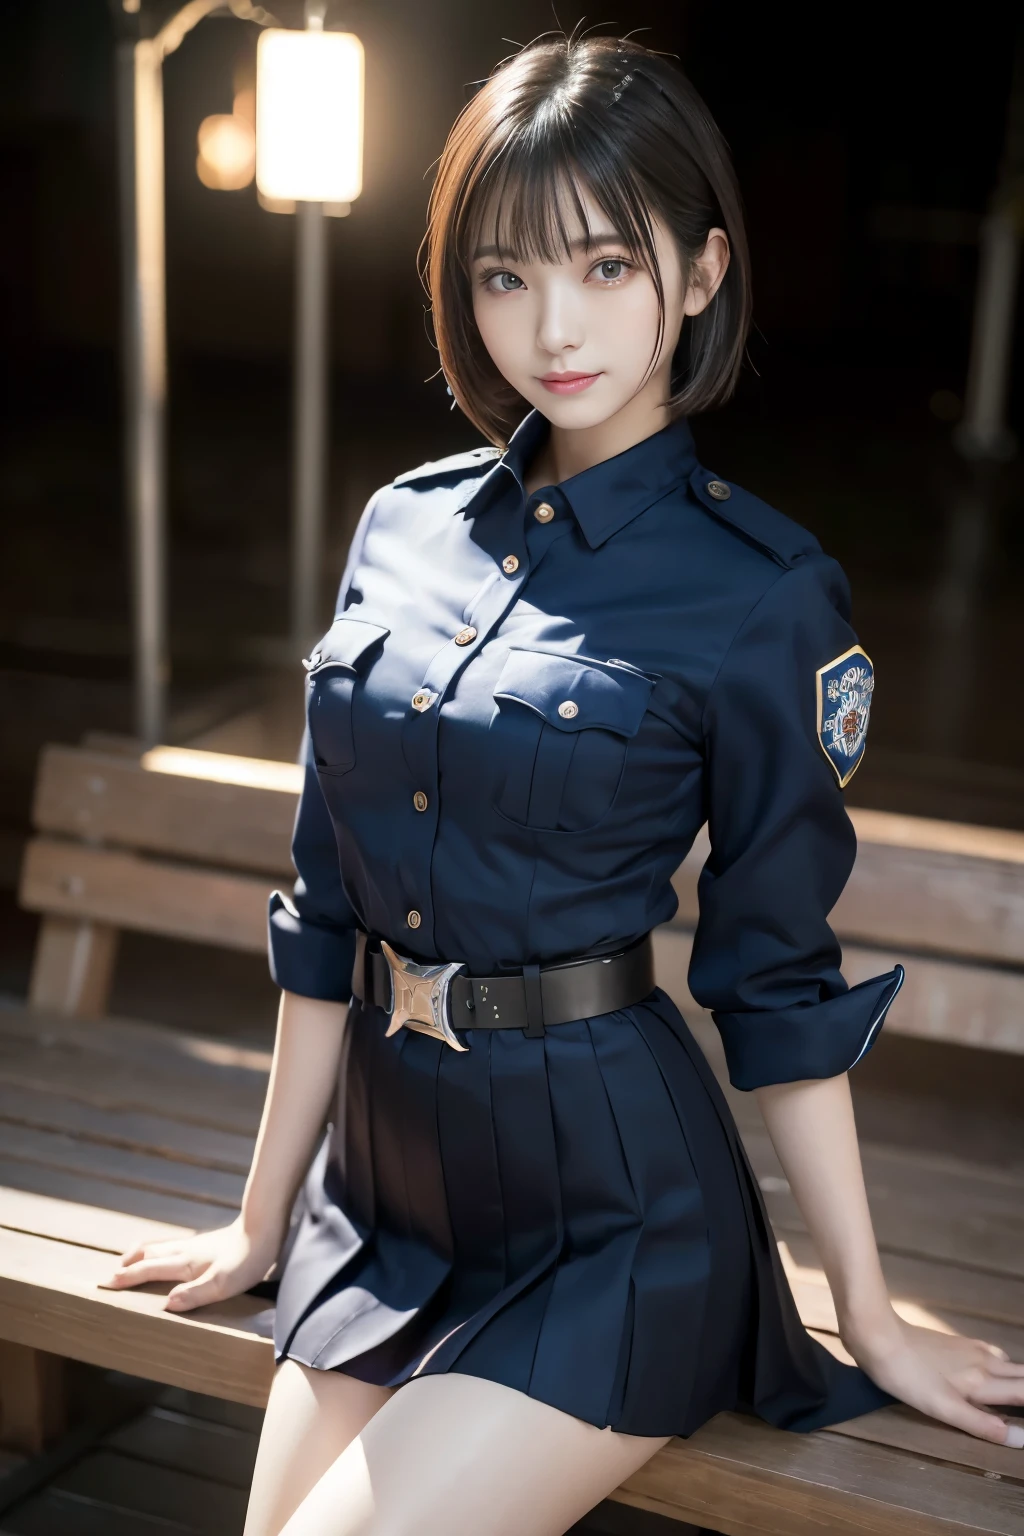 純真な20歳の少女、((日本警察官, セクシーな警察の制服, スカート, キュートでエレガント, ドラマチックなポーズ)),笑顔,夜の街の背景,近道、RAW写真, (8k、最高品質、傑作:1.2)、(複雑な細部:1.4)、(フォトリアリスティック:1.4)、オクタンレンダリング、複雑な3Dレンダリングの超詳細, スタジオソフトライト, リムライト, 鮮やかなディテール, スーパーディテール, リアルな肌の質感, 詳細面, 美しいディテールの目, 非常に詳細な CG Unity 16k 壁紙, 補う, (詳細な背景:1.2), 輝く肌, 全身,手を下げて、足を広げてパンティを見せて,ベンチに座る